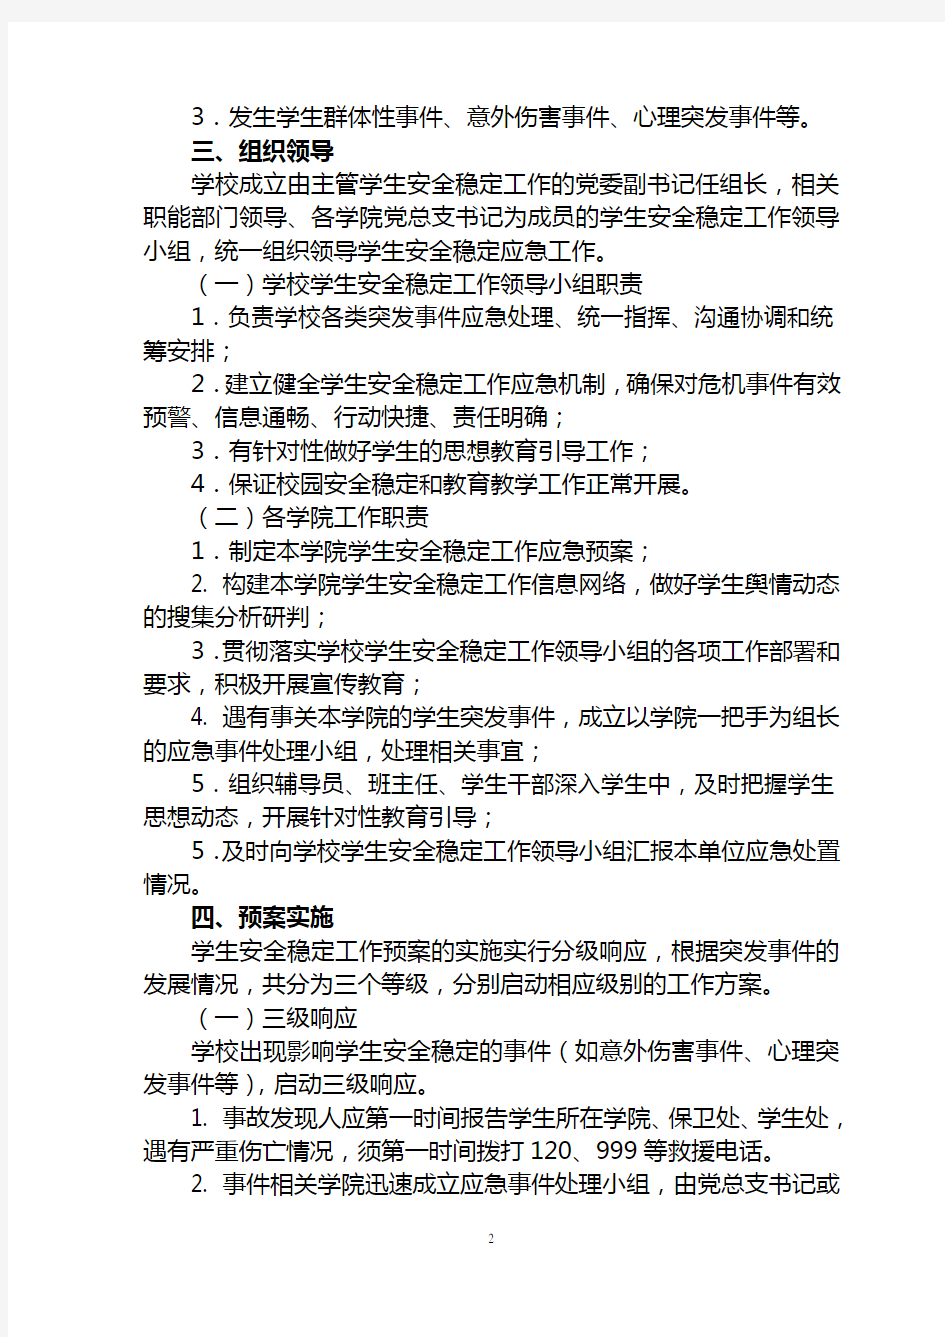 中国传媒大学学生安全稳定工作应急预案